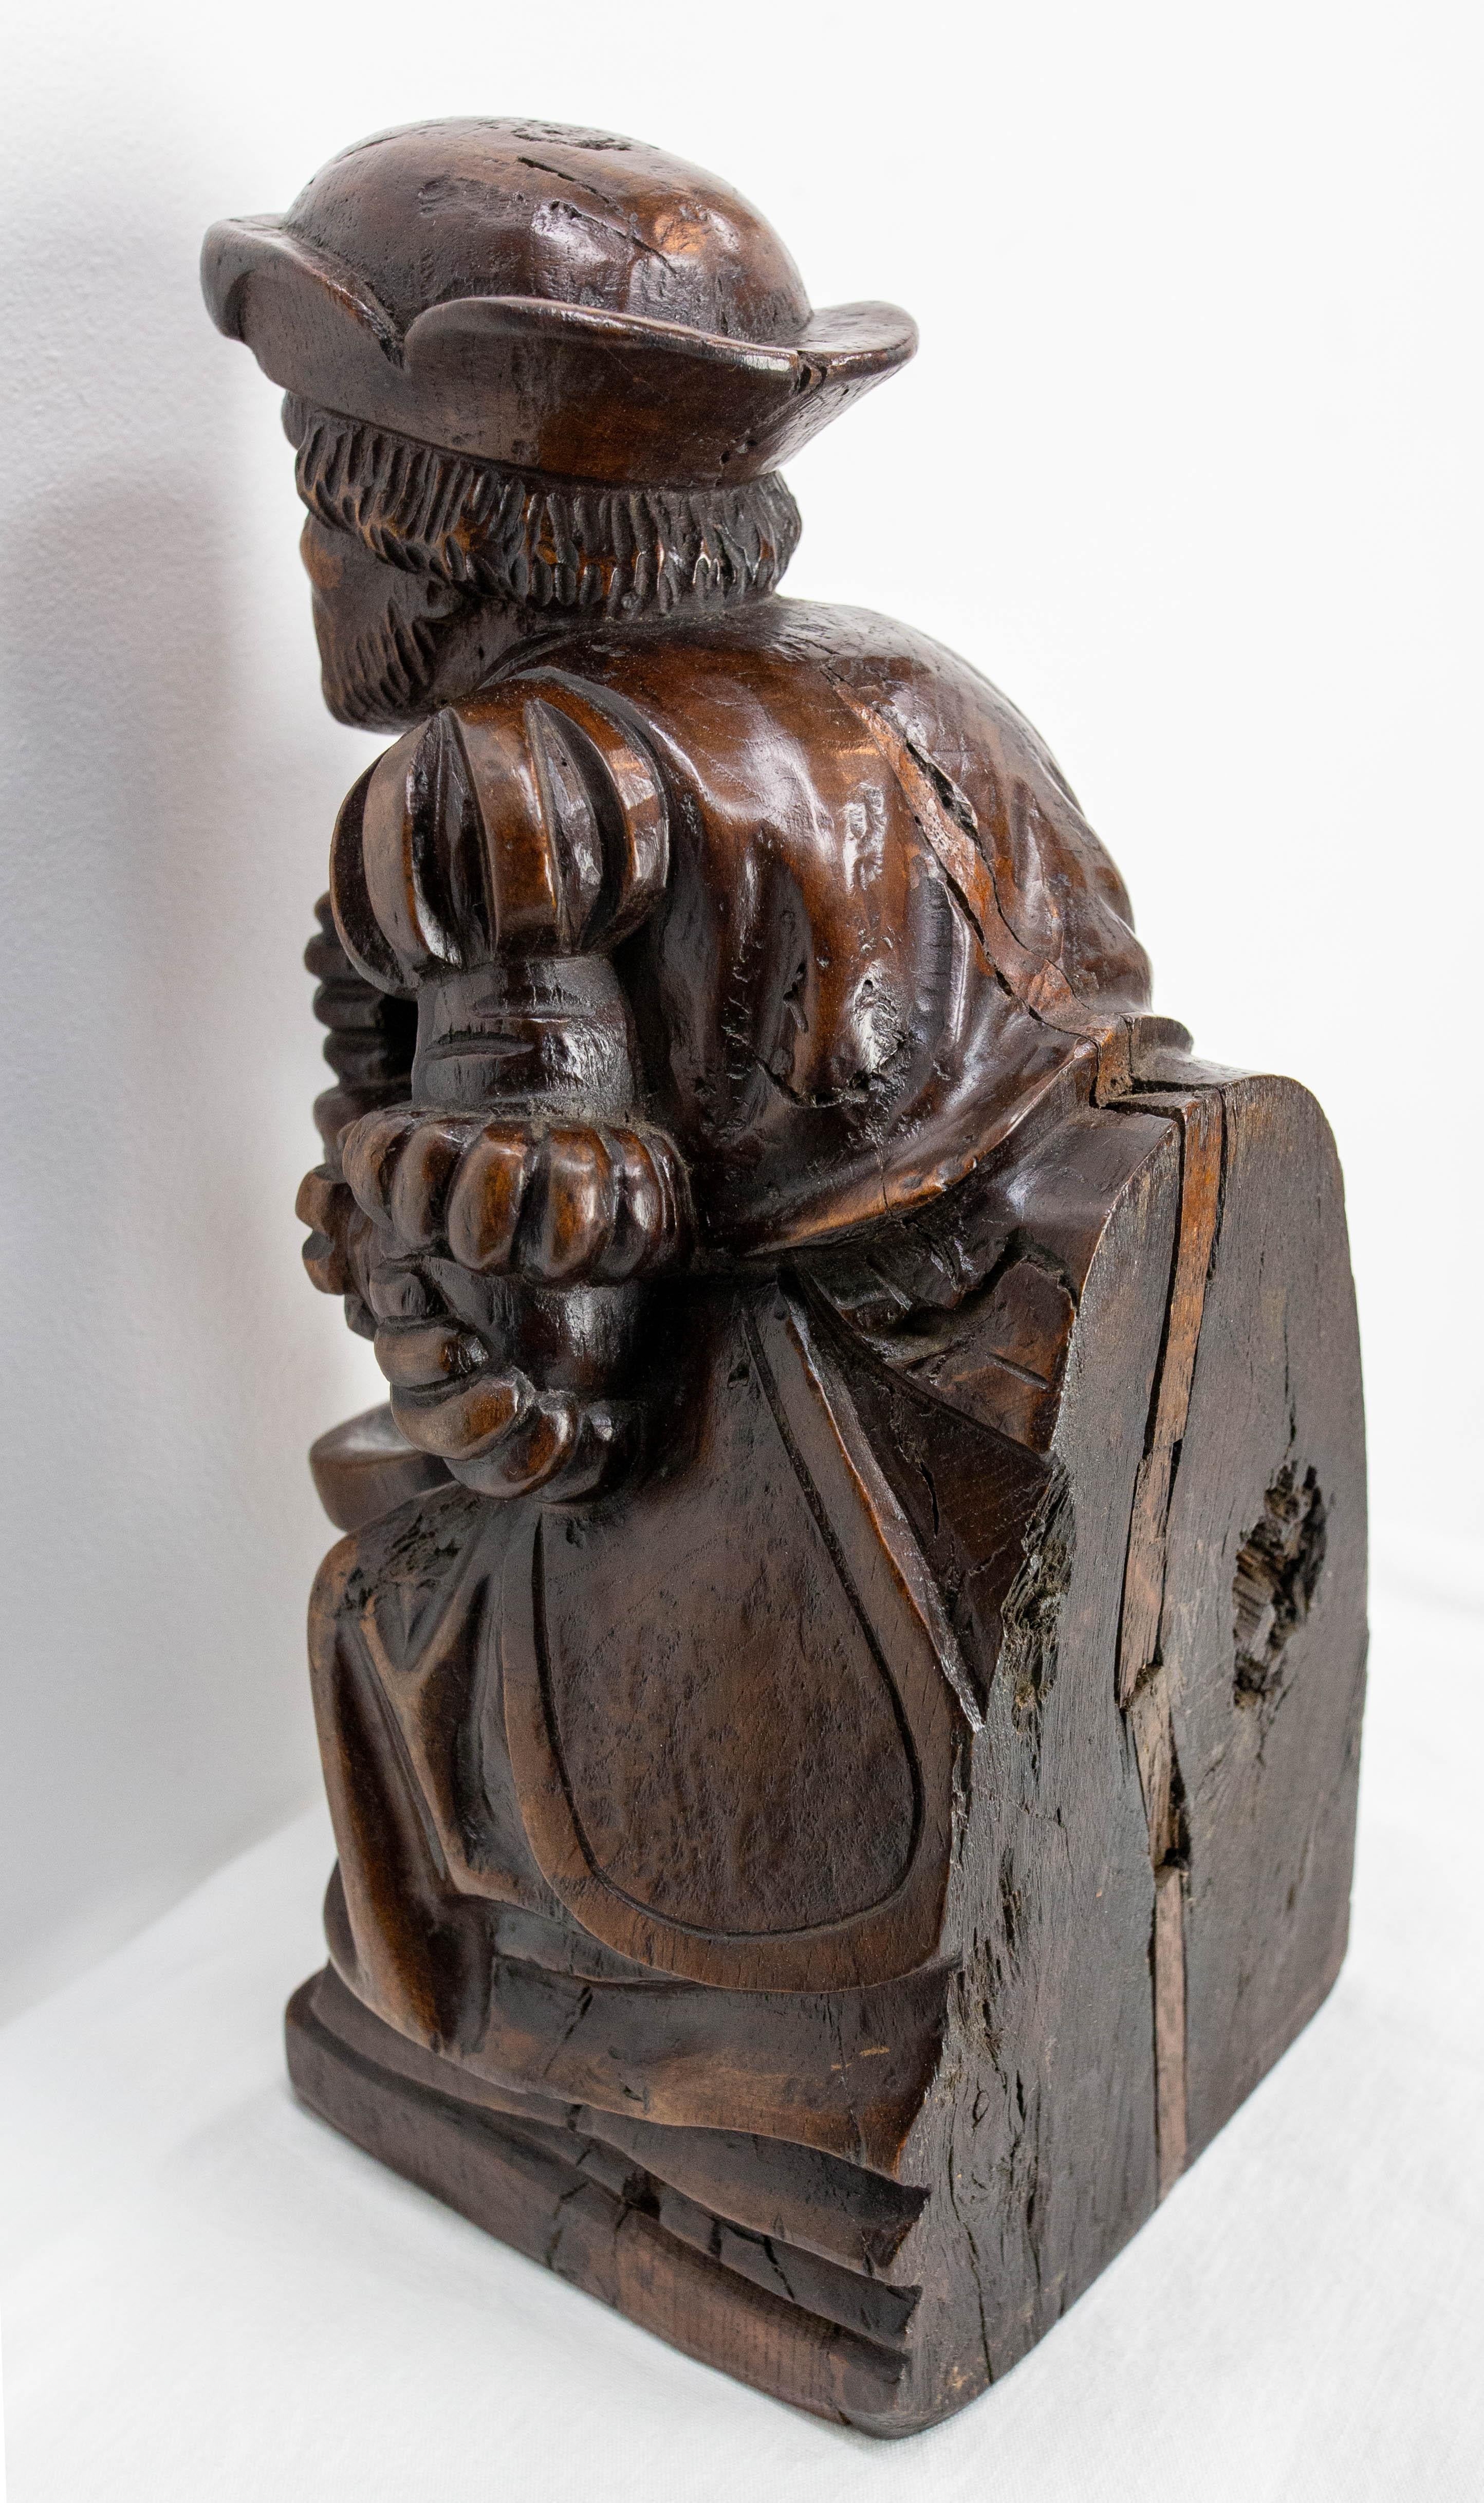 Statue en bois fabriquée à la main en chêne.

Bon état et belle patine

Expédition :
10 / 11 / 41 cm 1,1 Kg.